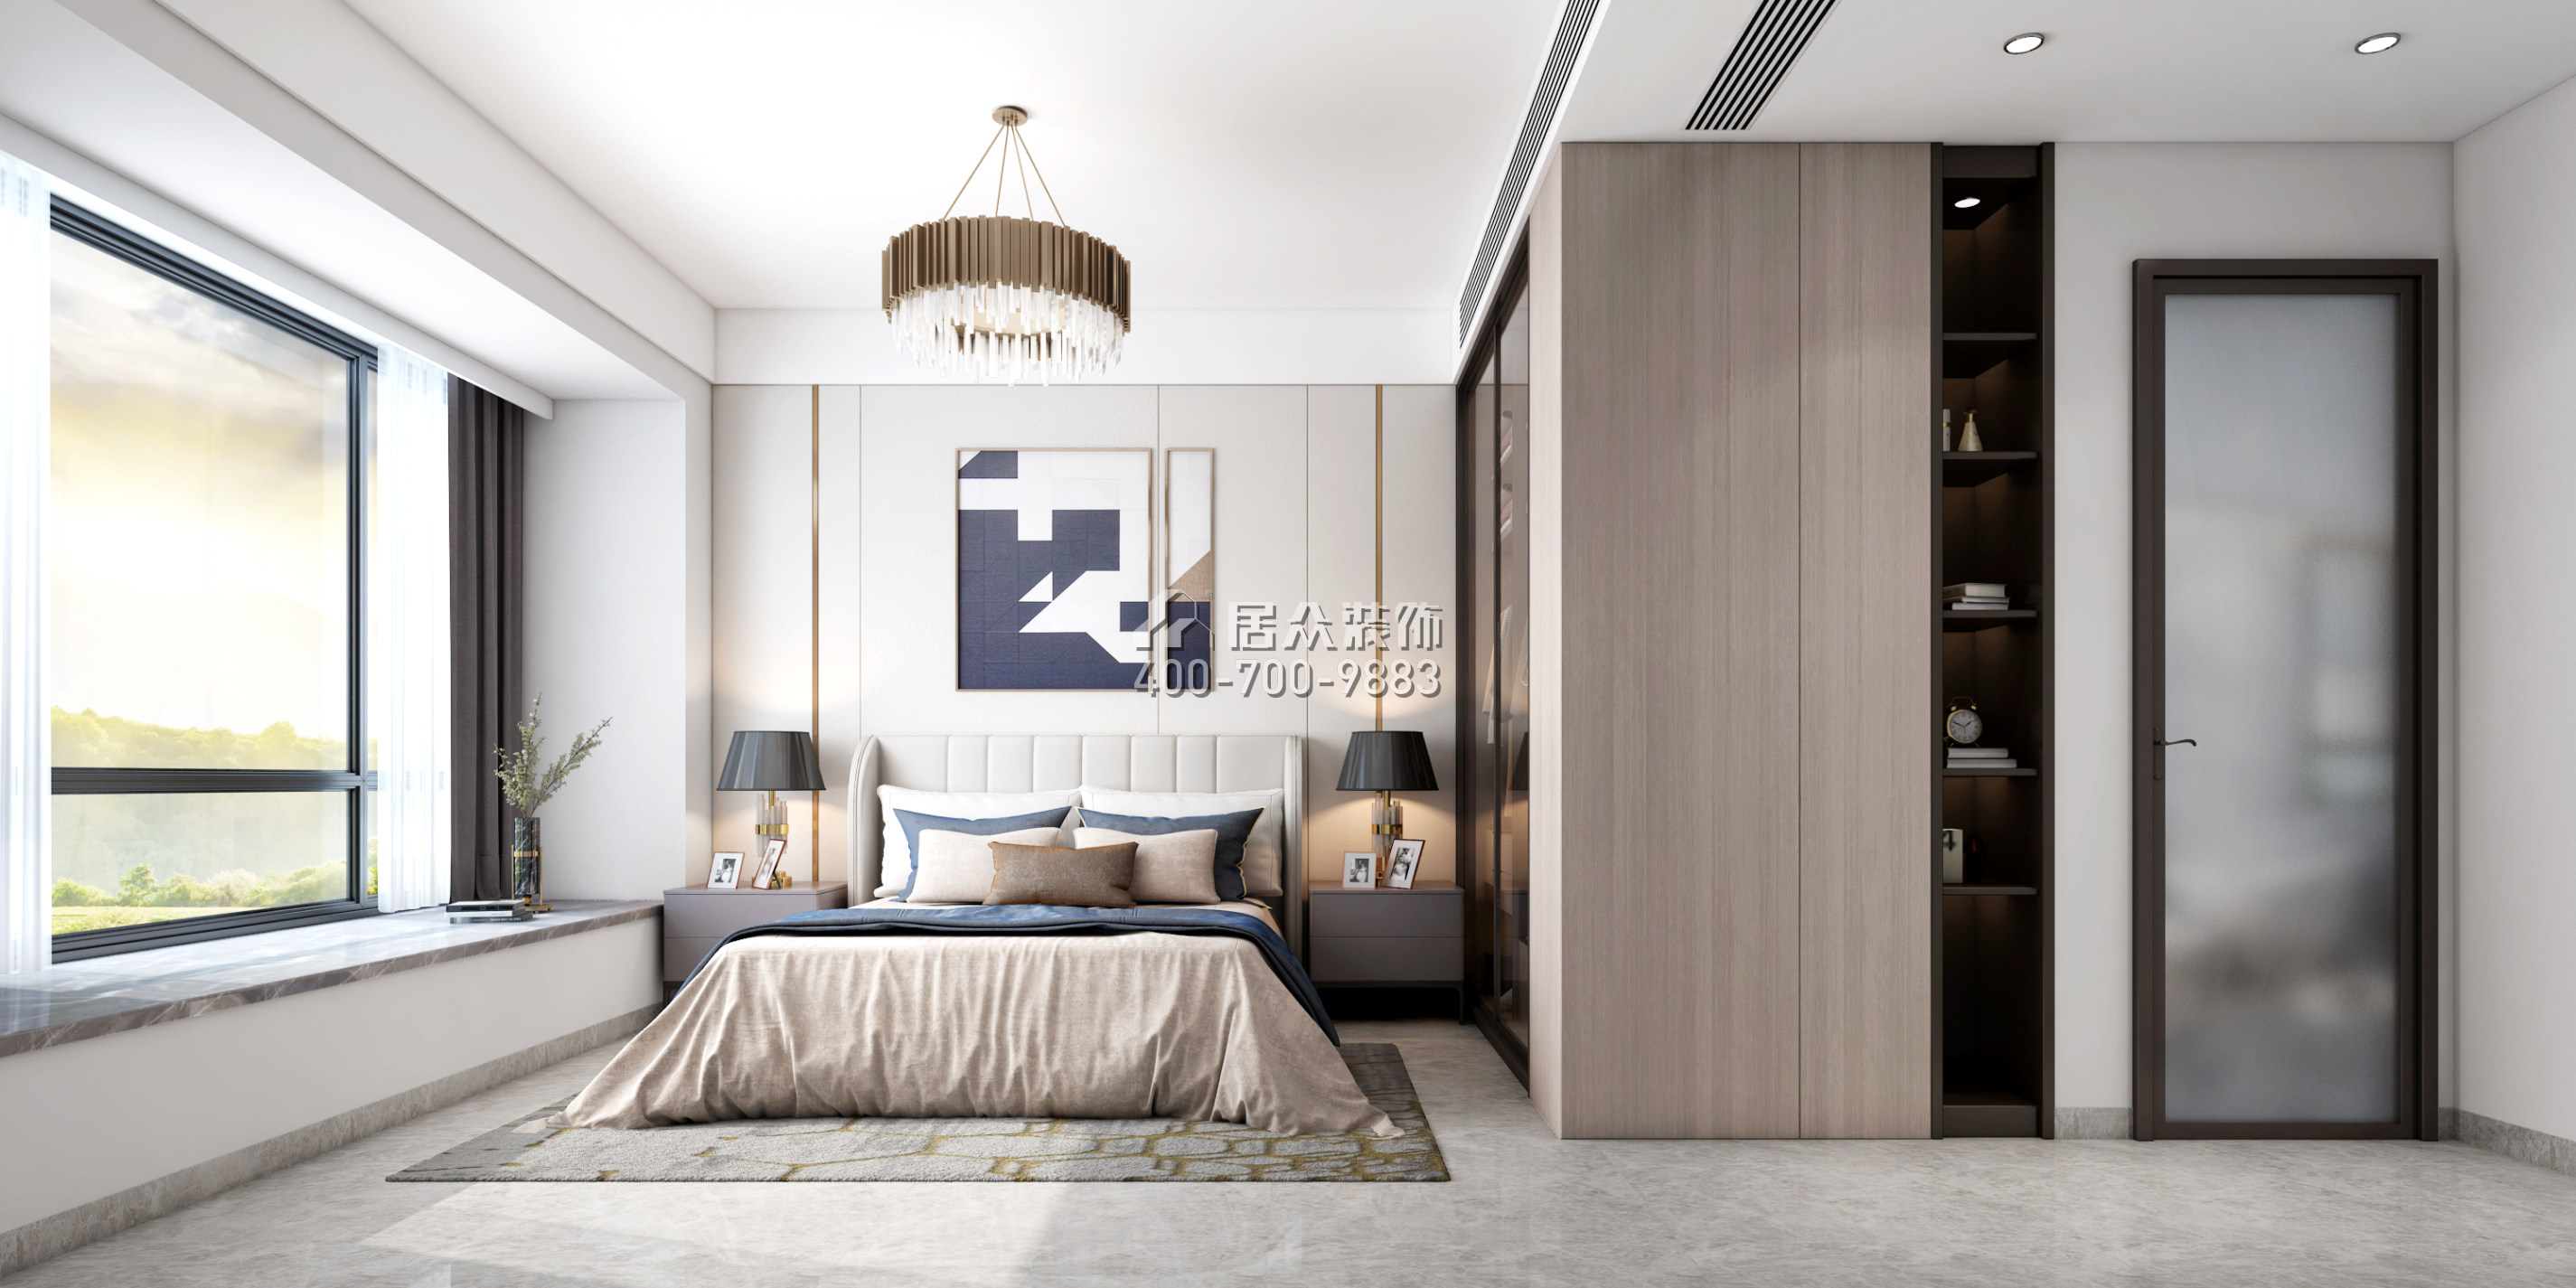 天鵝湖花園二期123平方米現代簡約風格平層戶型臥室裝修效果圖